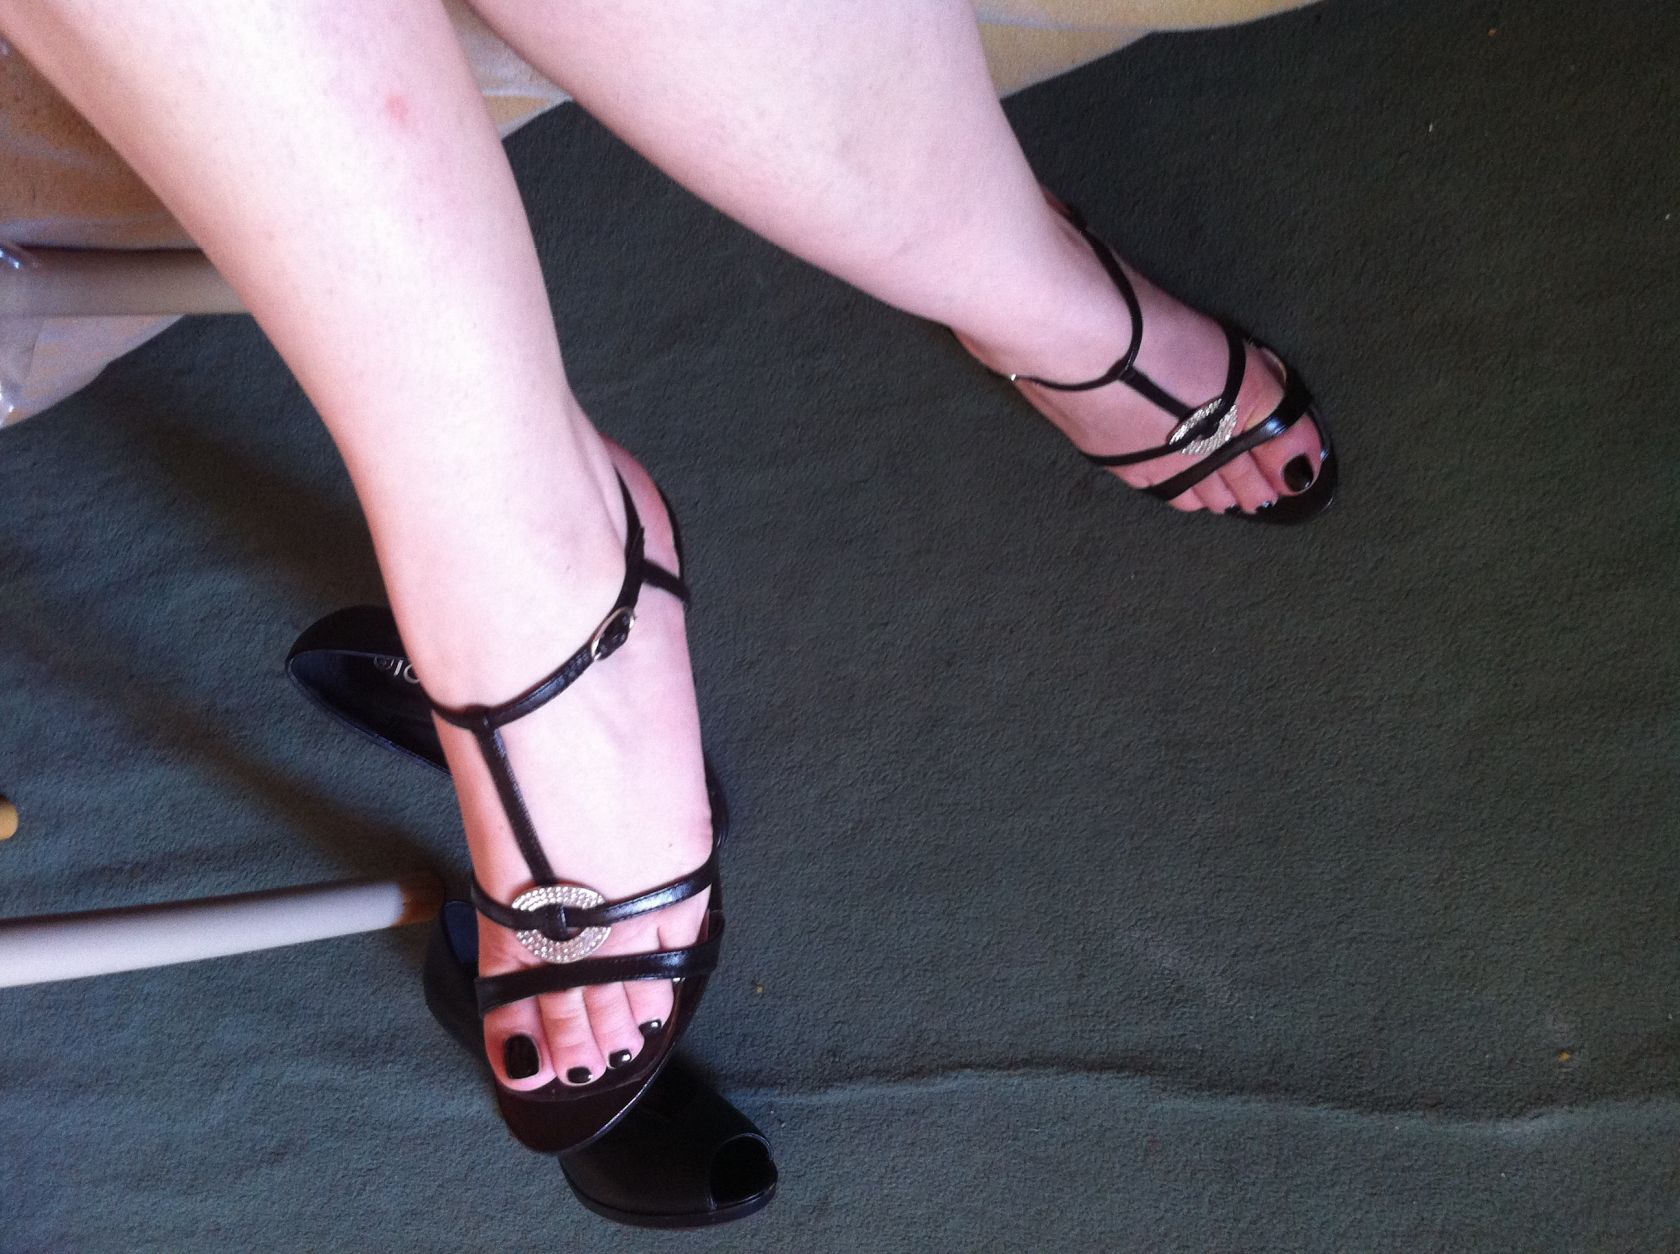 My wife's heels19